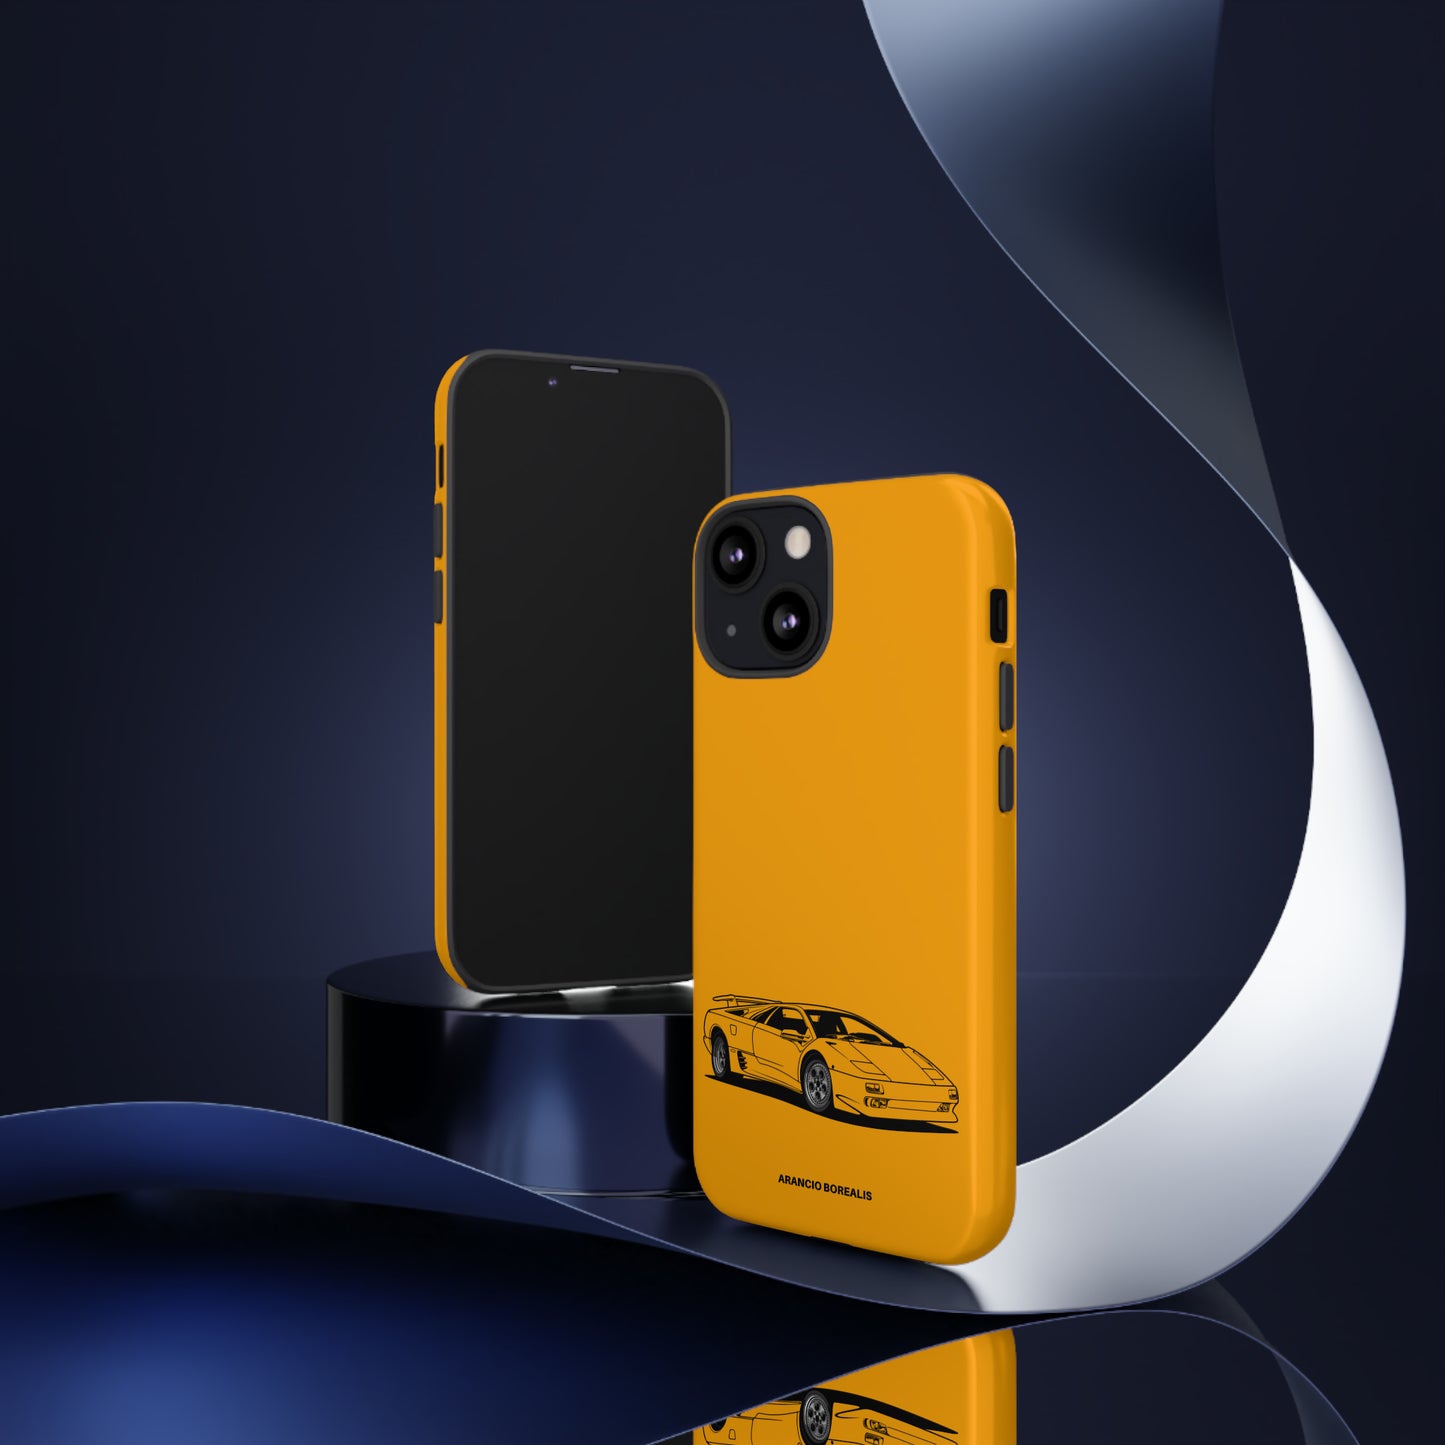 Arancio Borealis - Tough Case iPhone/Samsung/Pixel